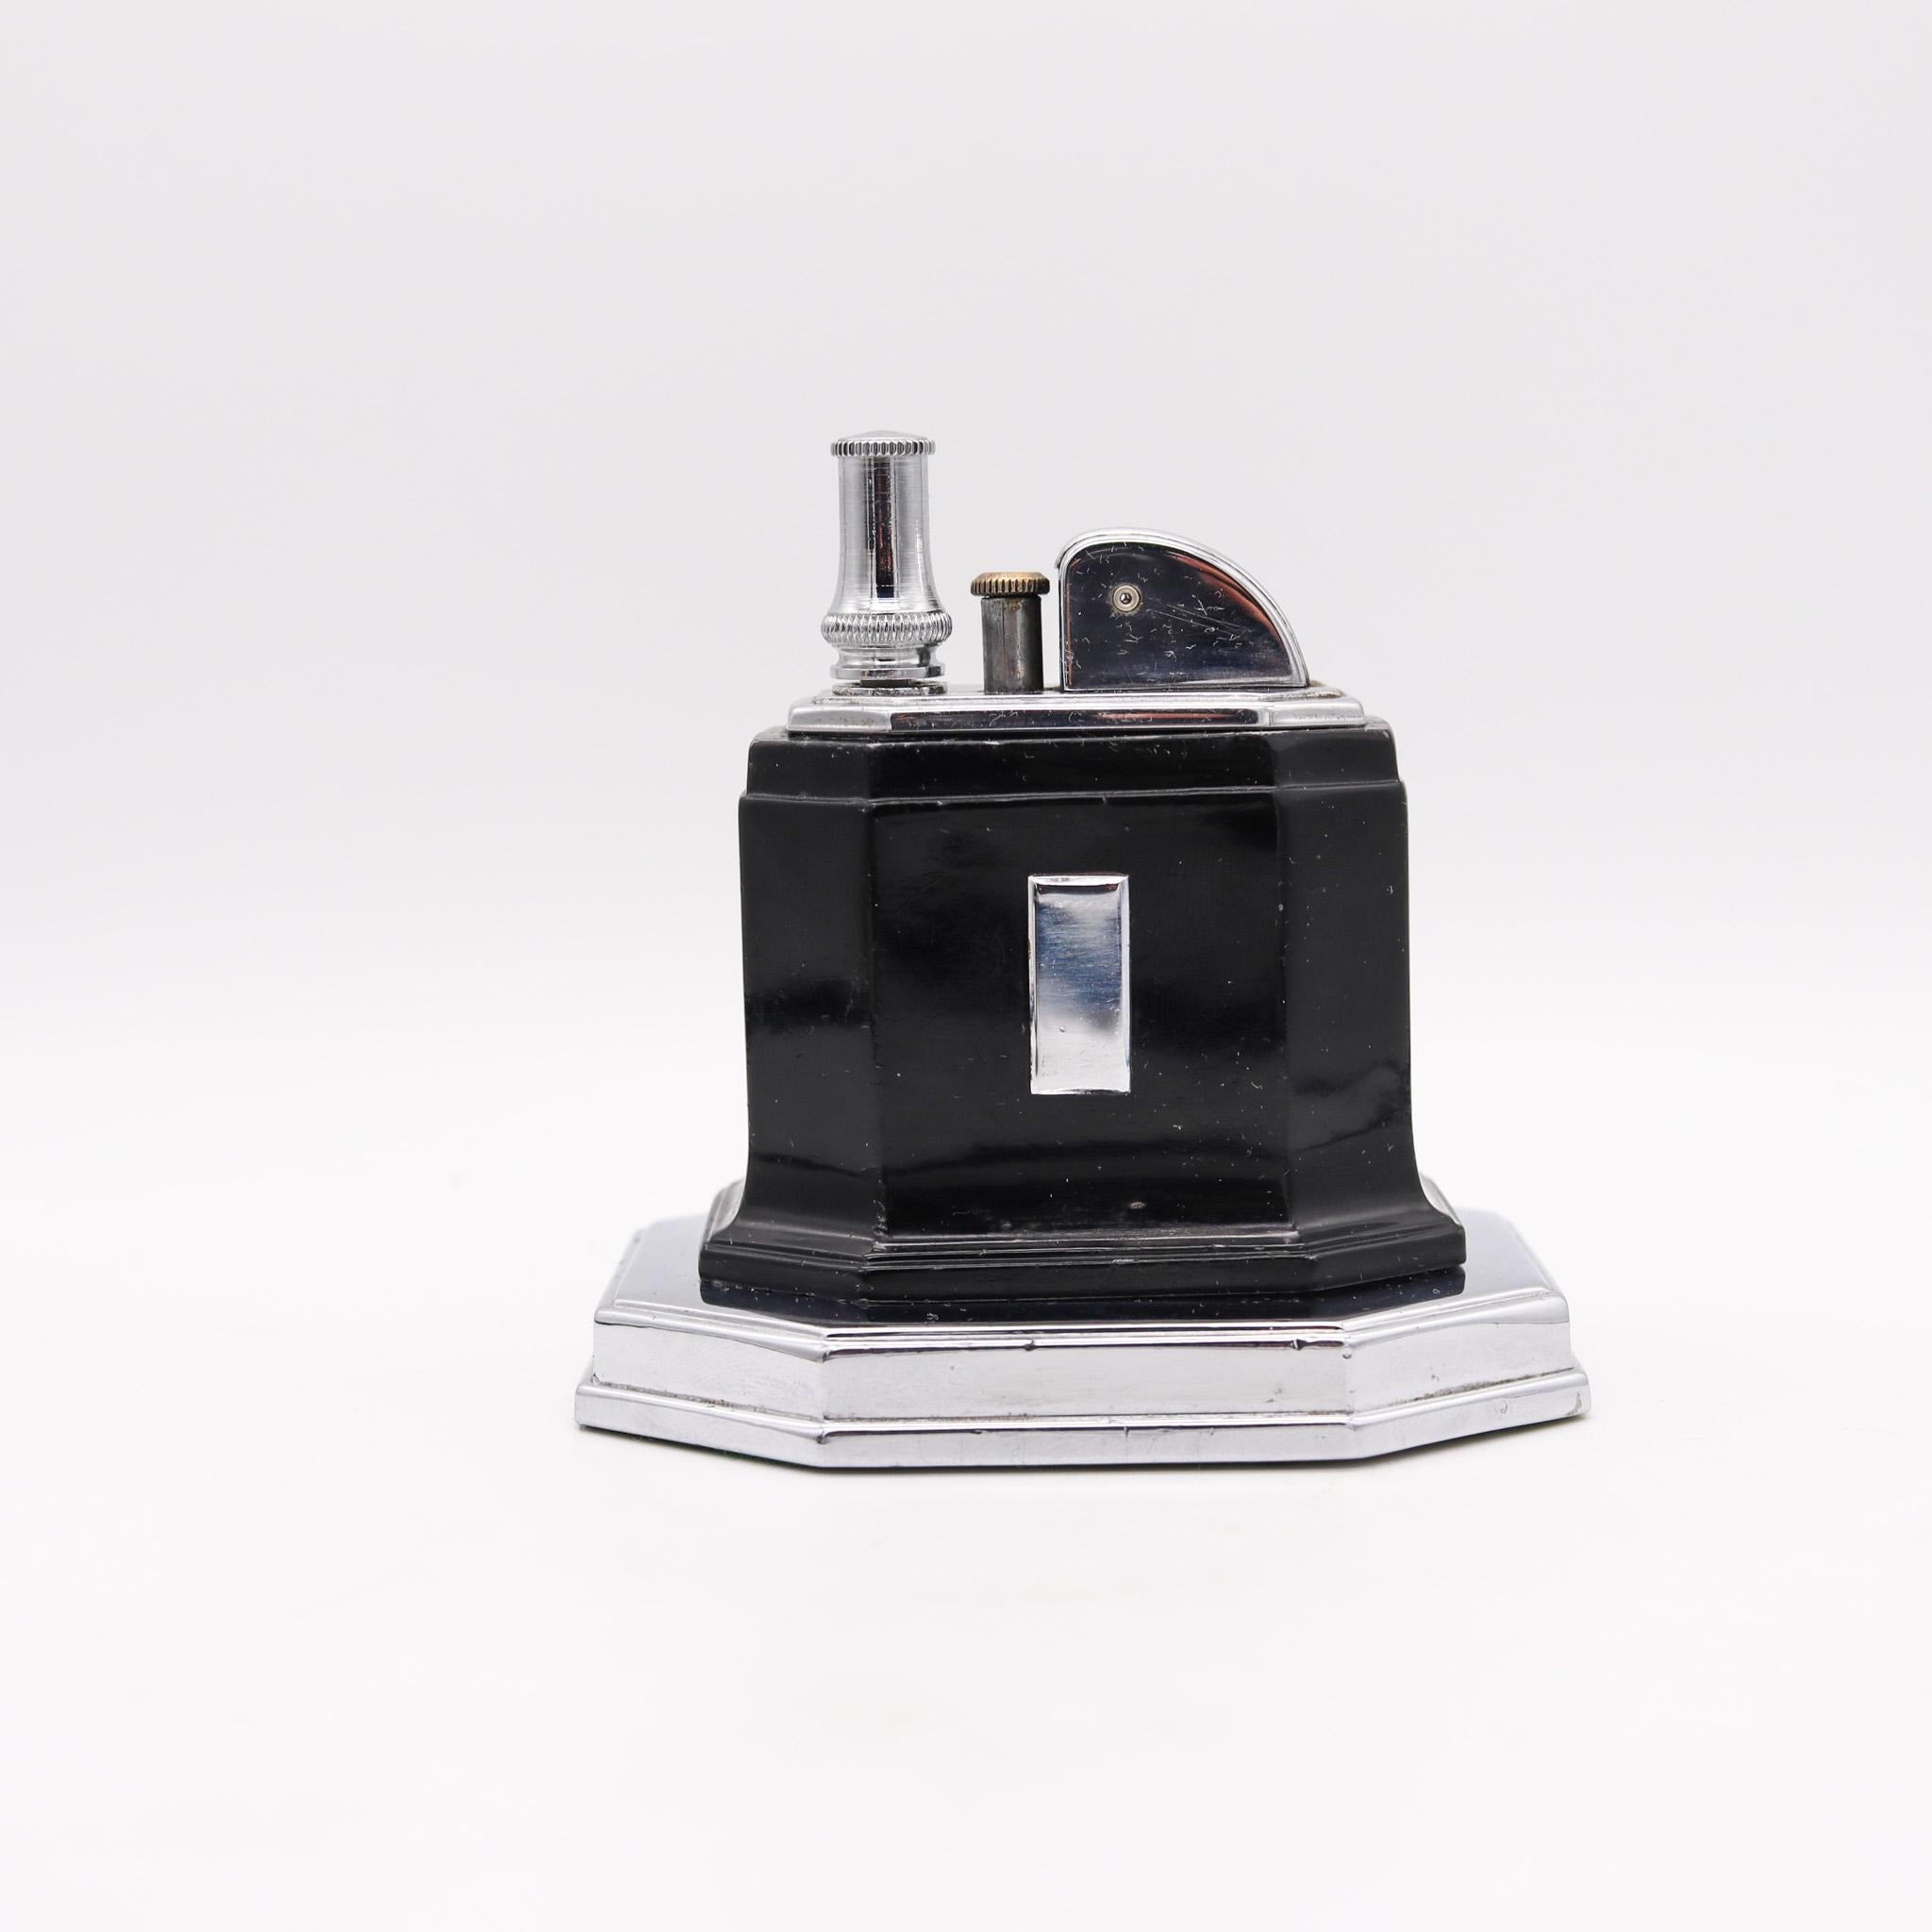 Ein von Ronson entworfenes Tischfeuerzeug.

Dieses Ronson Touch-Tip Octette Tischfeuerzeug wurde zwischen 1935 und 1951 von der Ronson Art Metal Works Inc. mit Sitz in Newark, New Jersey in den Vereinigten Staaten hergestellt. Mit diesem Feuerzeug